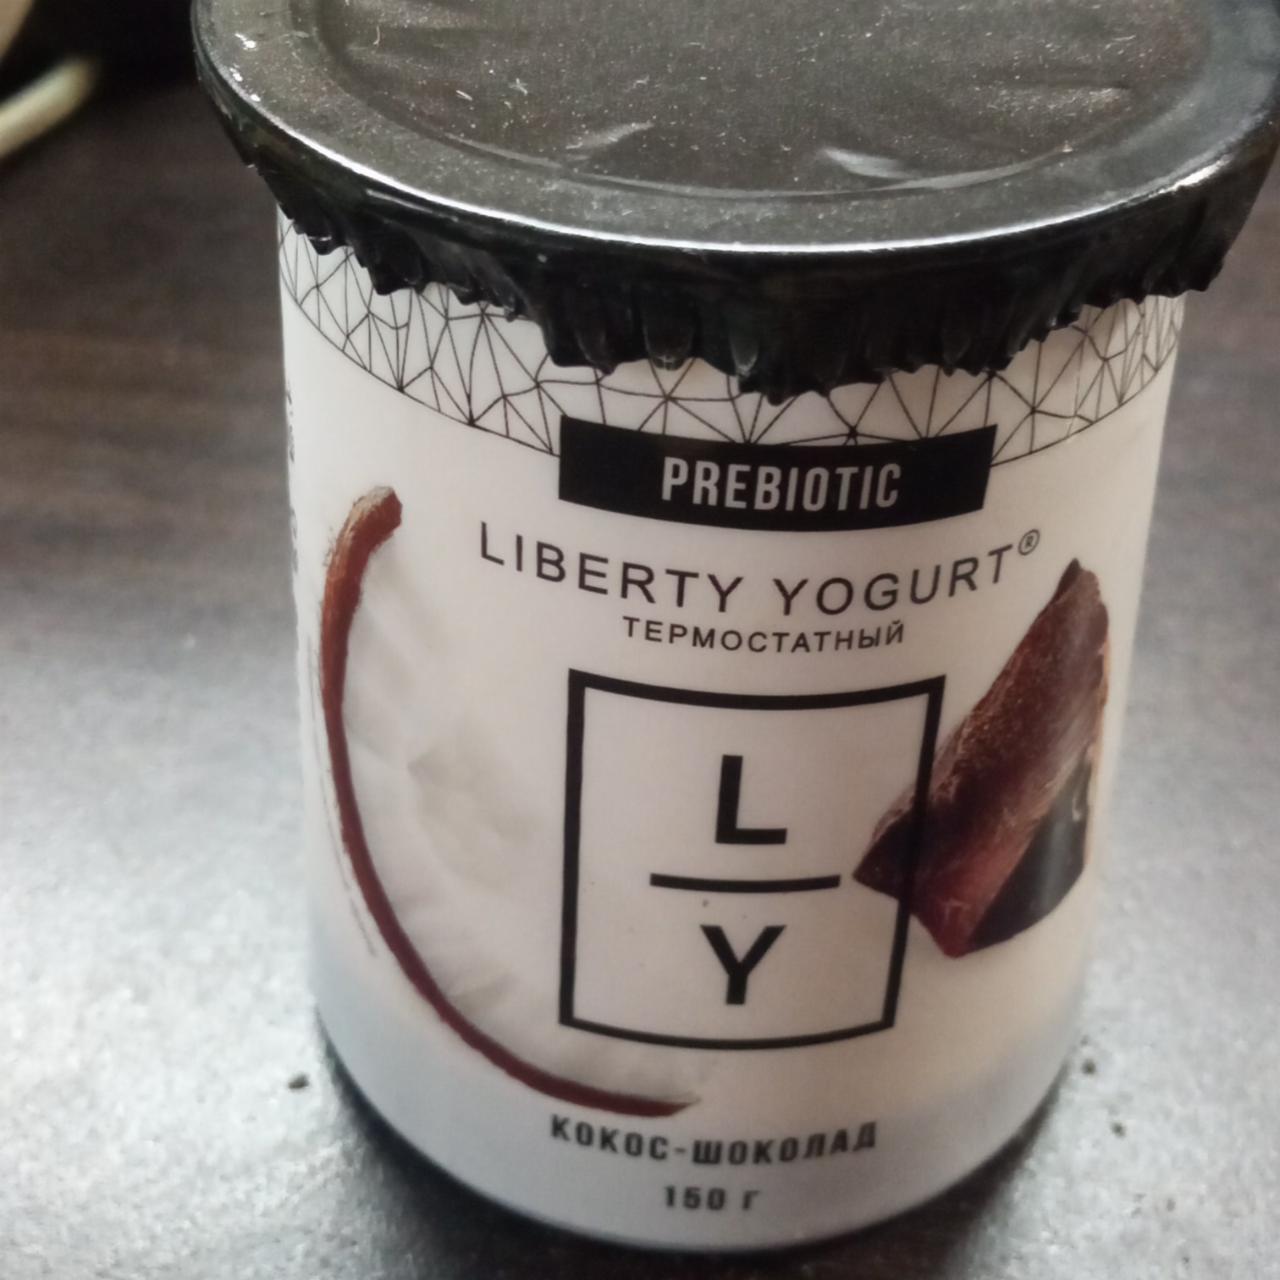 Фото - Питьевой йогурт термостатный кокос-шоколад 1.5% Liberty Yogurt